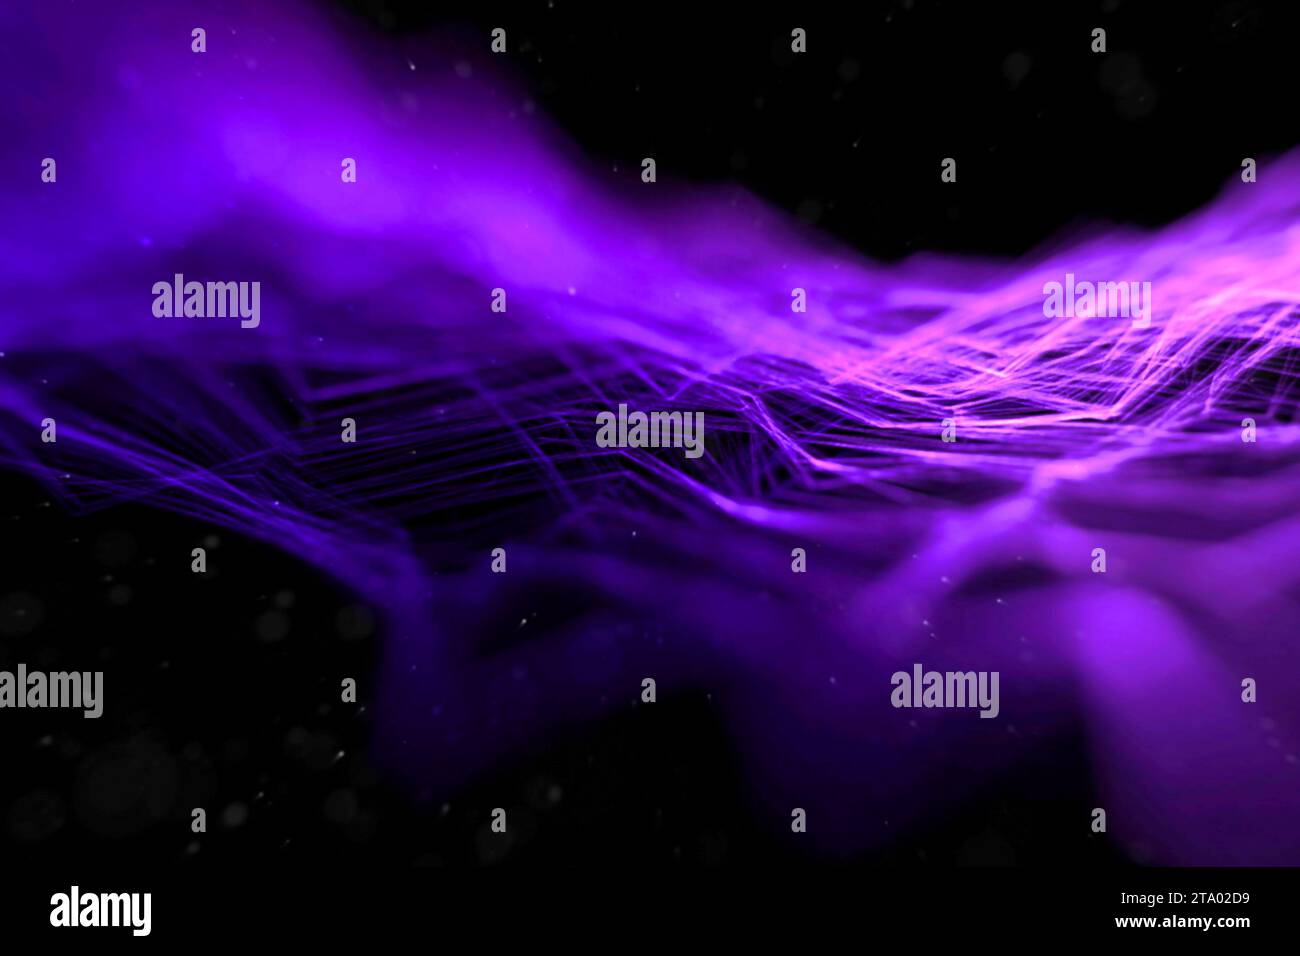 Abstraktes Stream Wave Array farbenfrohe Glitzer glitzernde blaue und lila Linien mit Partikeln auf schwarzem Hintergrund Wissenschaft und Forschungstektologie Konzept Stockfoto